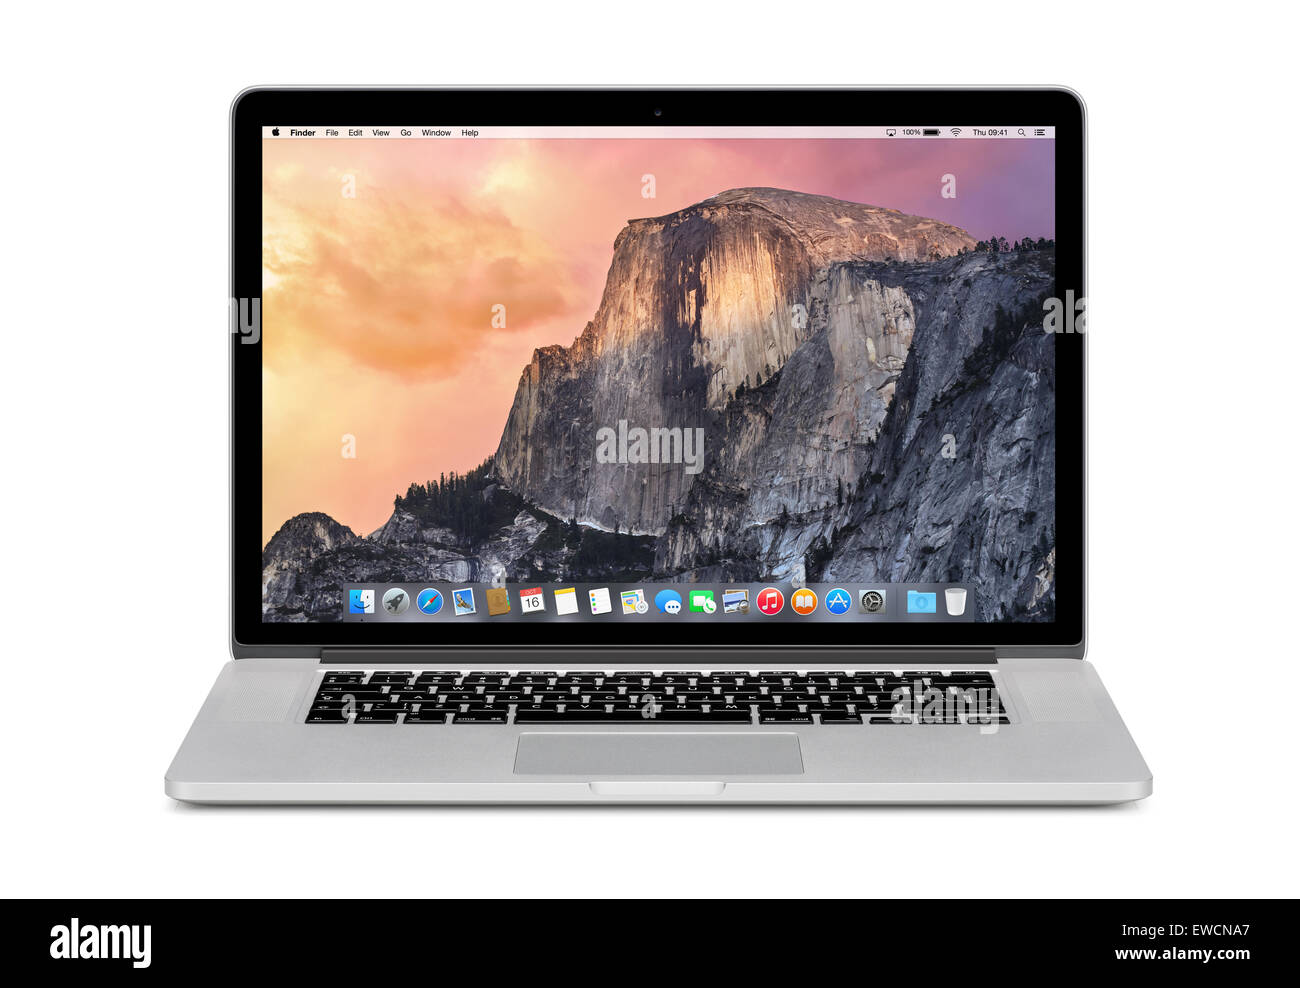 Varna, Bulgarie - Novembre 03, 2013 : Vue de face d'Apple MacBook Pro 15 pouces avec écran Retina Yosemite OS X sur l'écran. Isolé Banque D'Images